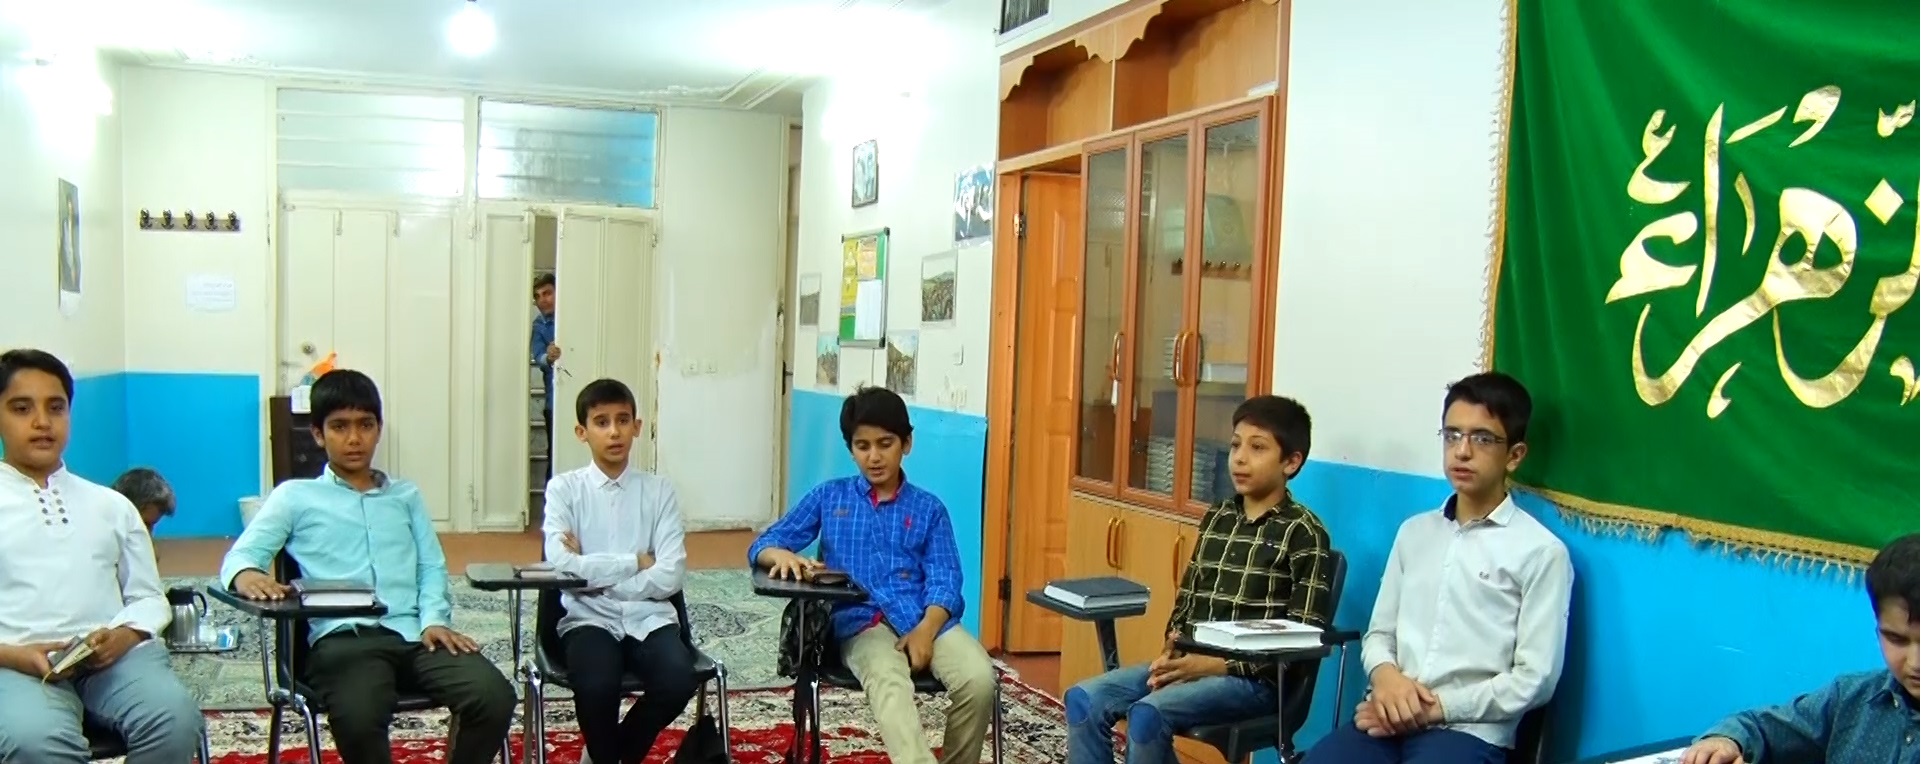 ترویج سبک زندگی اسلامی در مدارس قرآنی